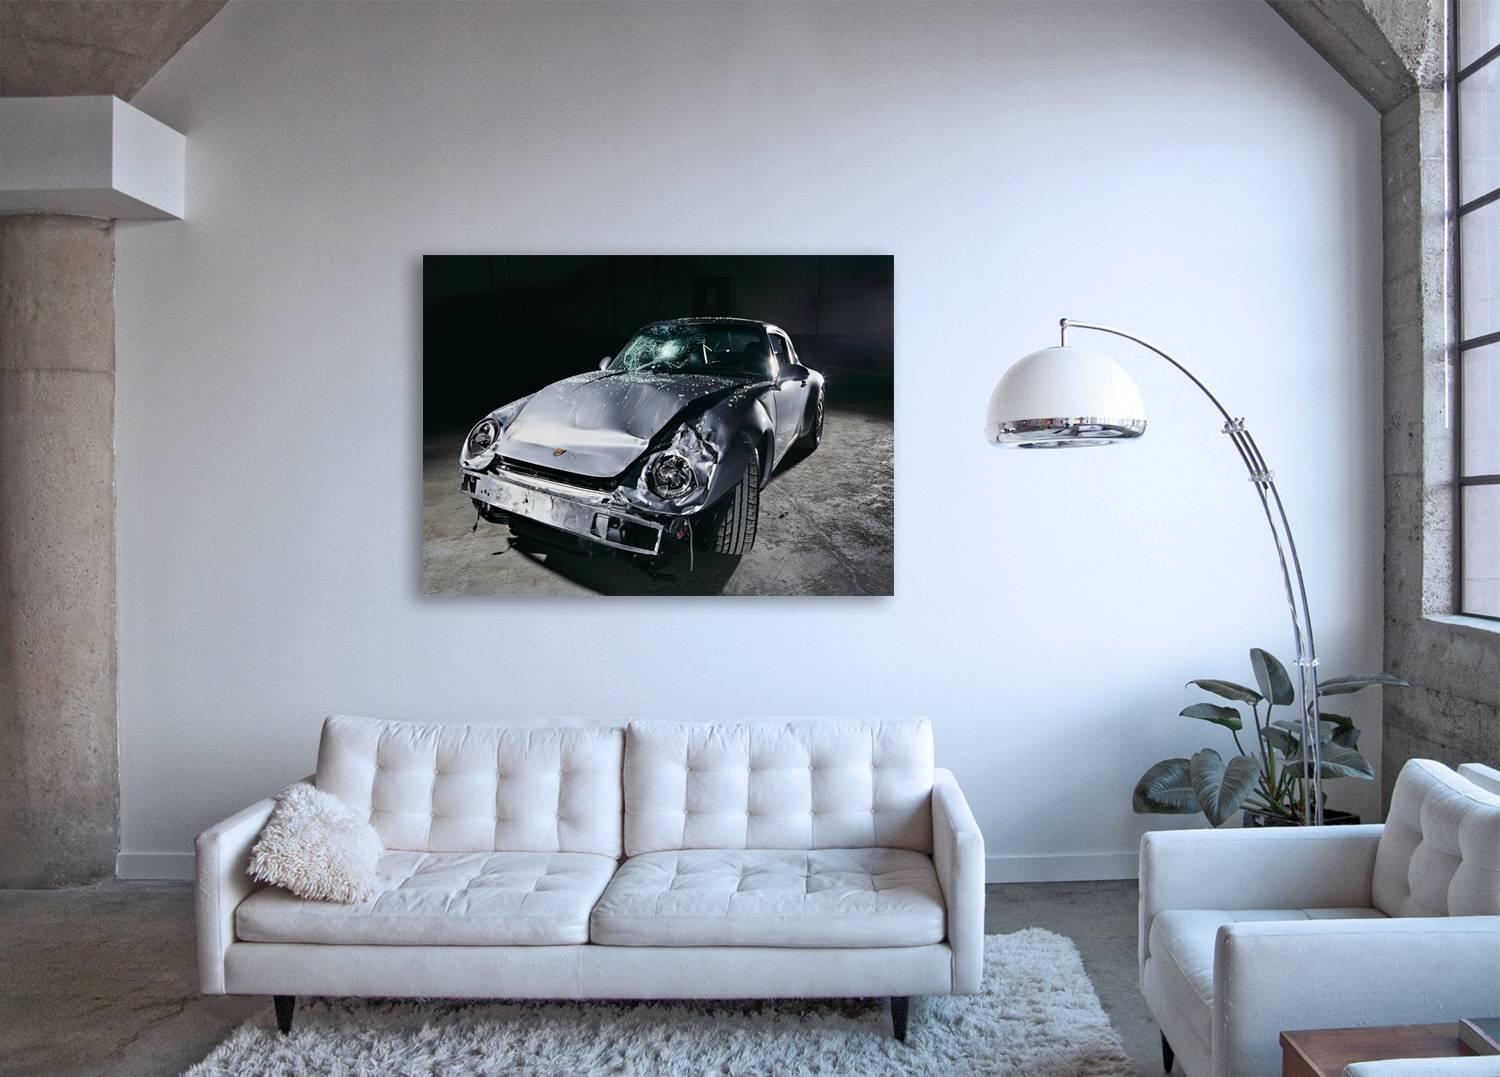 NINE-ONE-ONE (Porsche 911) – großformatige Studiofotografie eines verunglückten Autos – Photograph von Frank Schott